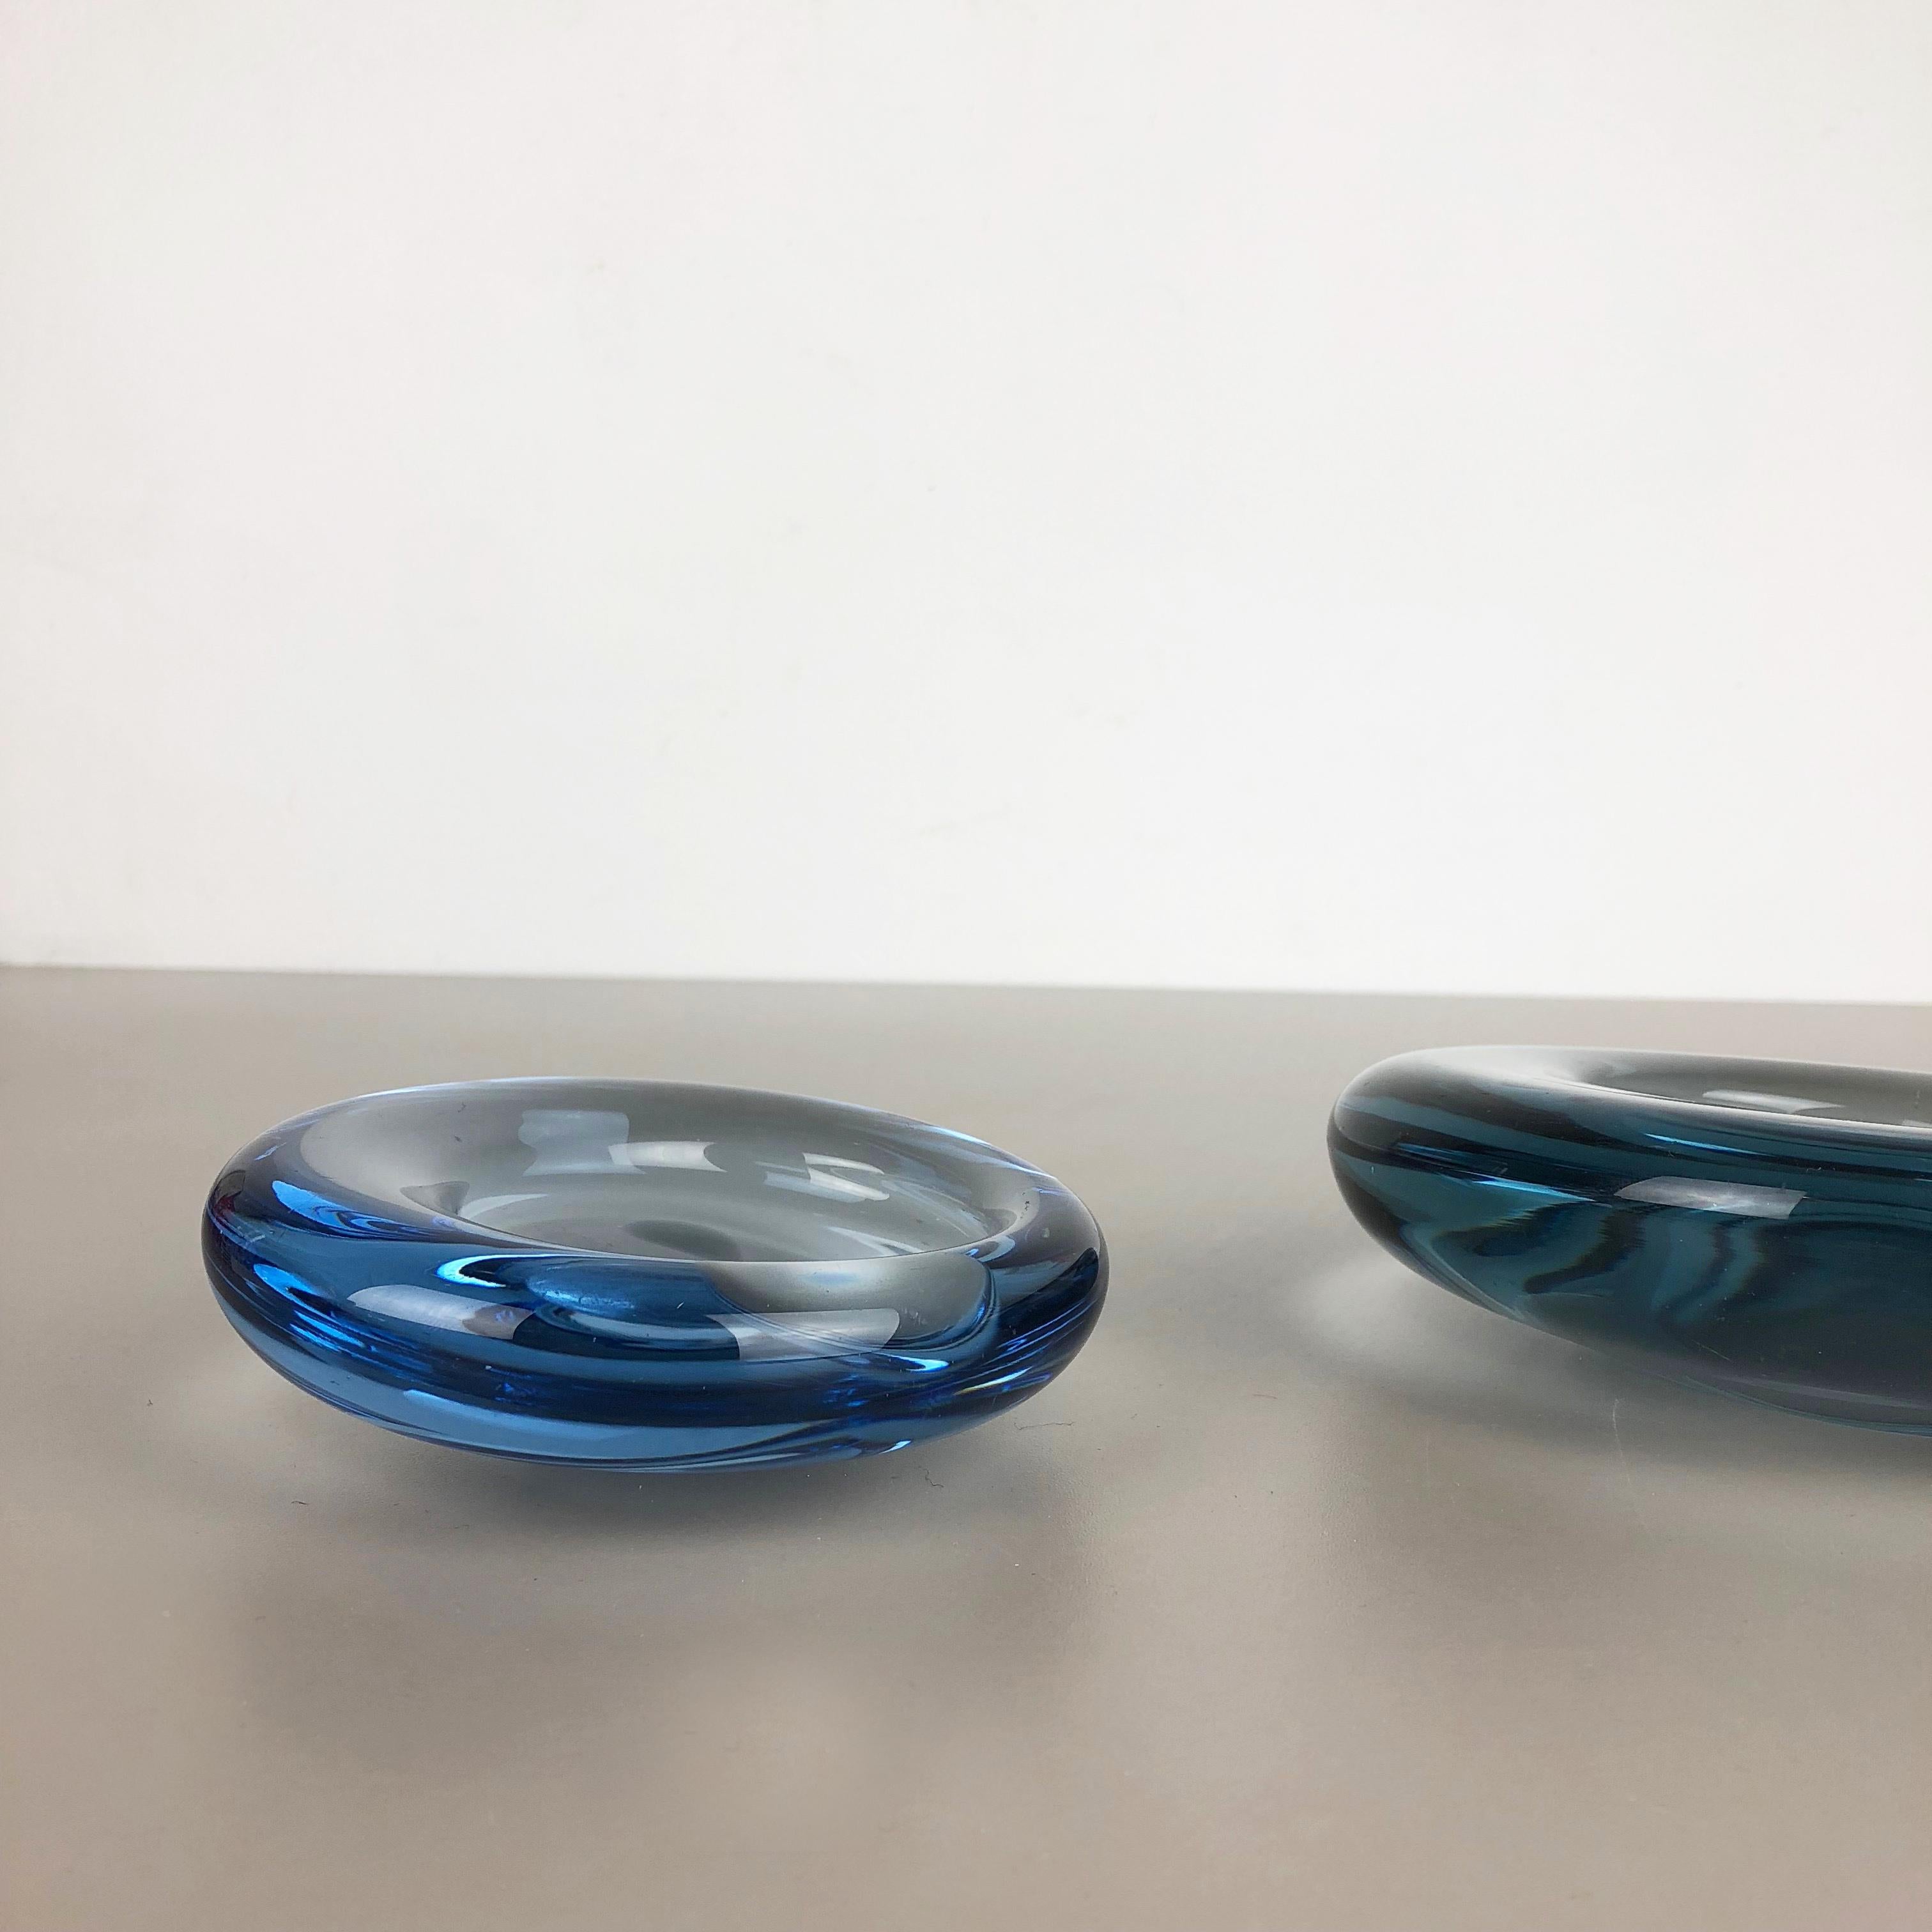 Set of 2 Glass Shell Bowl Elements by Per Lutken for Holmegaard. Denmark, 1960s (20. Jahrhundert)